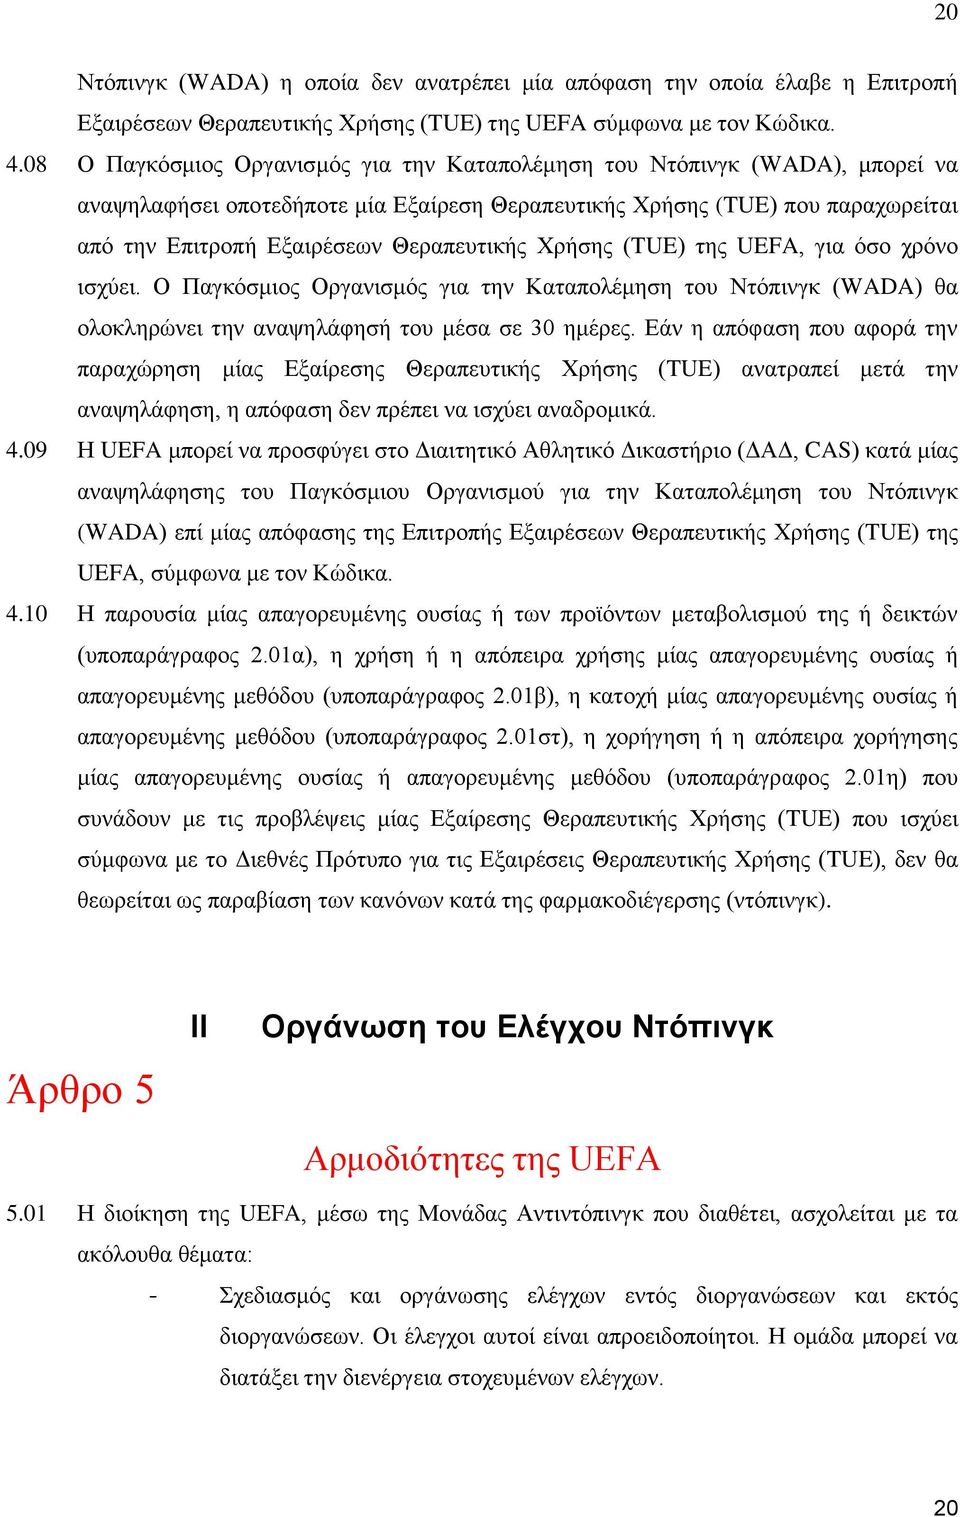 Θεραπευτικής Χρήσης (TUE) της UEFA, για όσο χρόνο ισχύει. Ο Παγκόσμιος Οργανισμός για την Καταπολέμηση του Ντόπινγκ (WADA) θα ολοκληρώνει την αναψηλάφησή του μέσα σε 30 ημέρες.